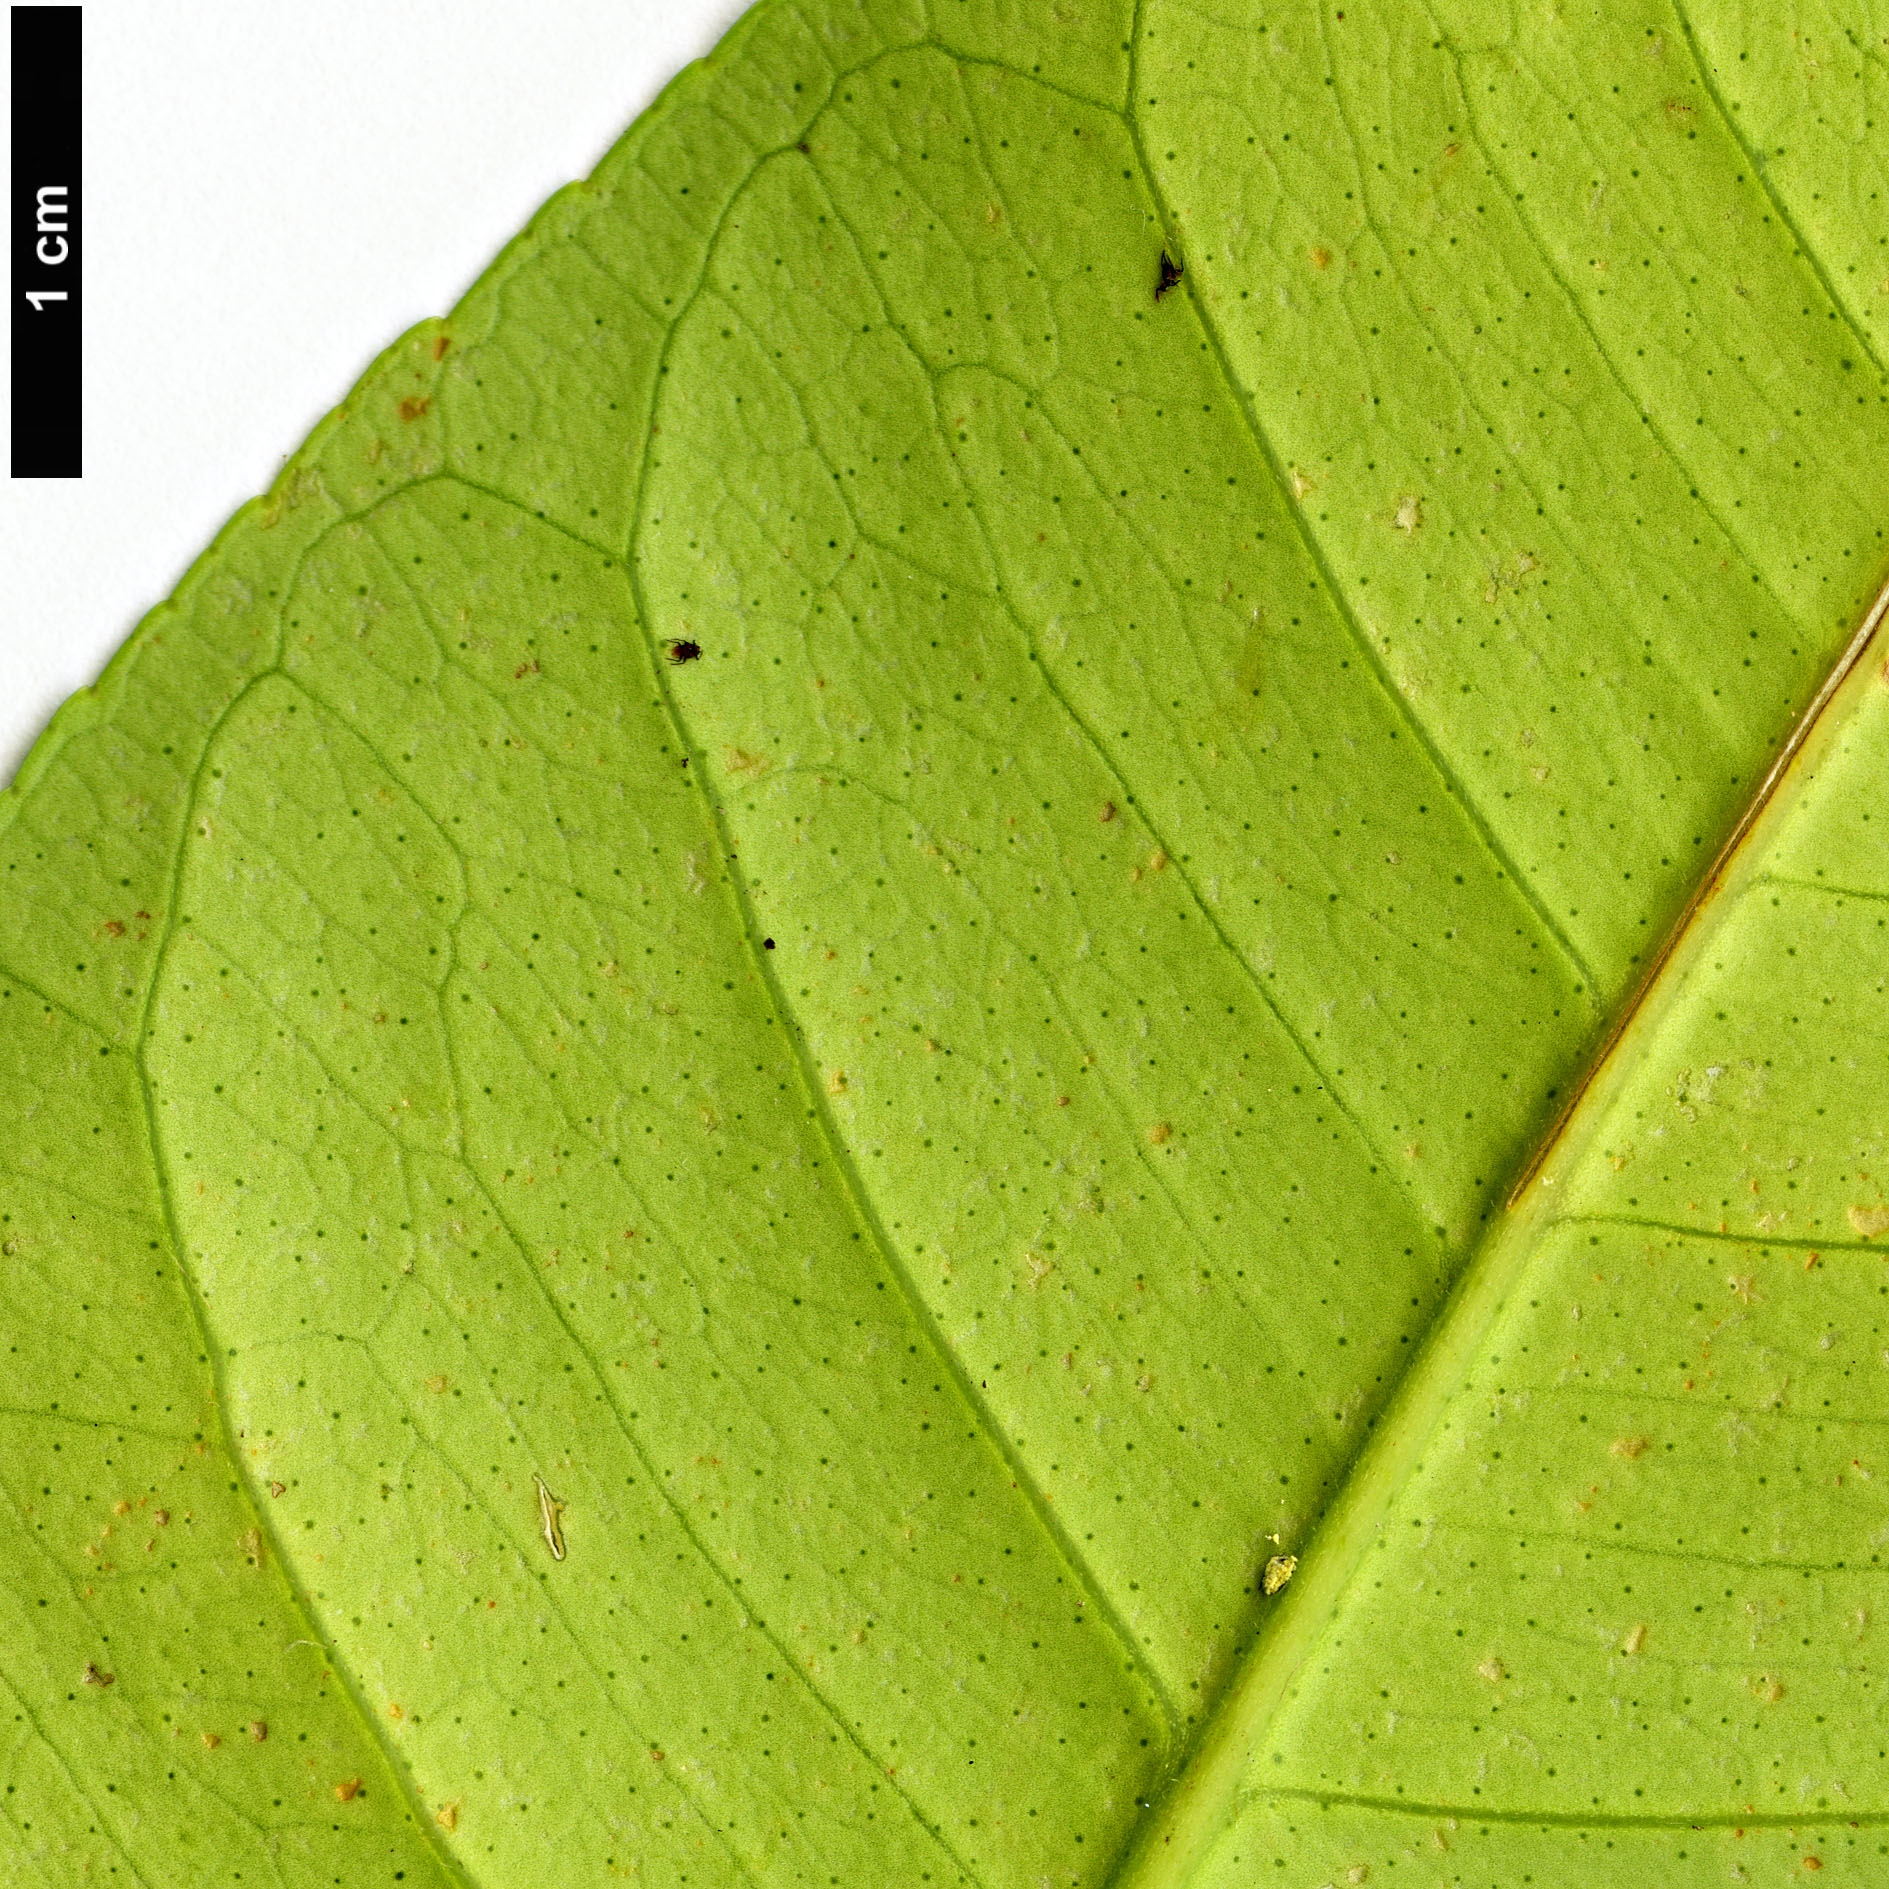 High resolution image: Family: Rutaceae - Genus: Citrus - Taxon: medica